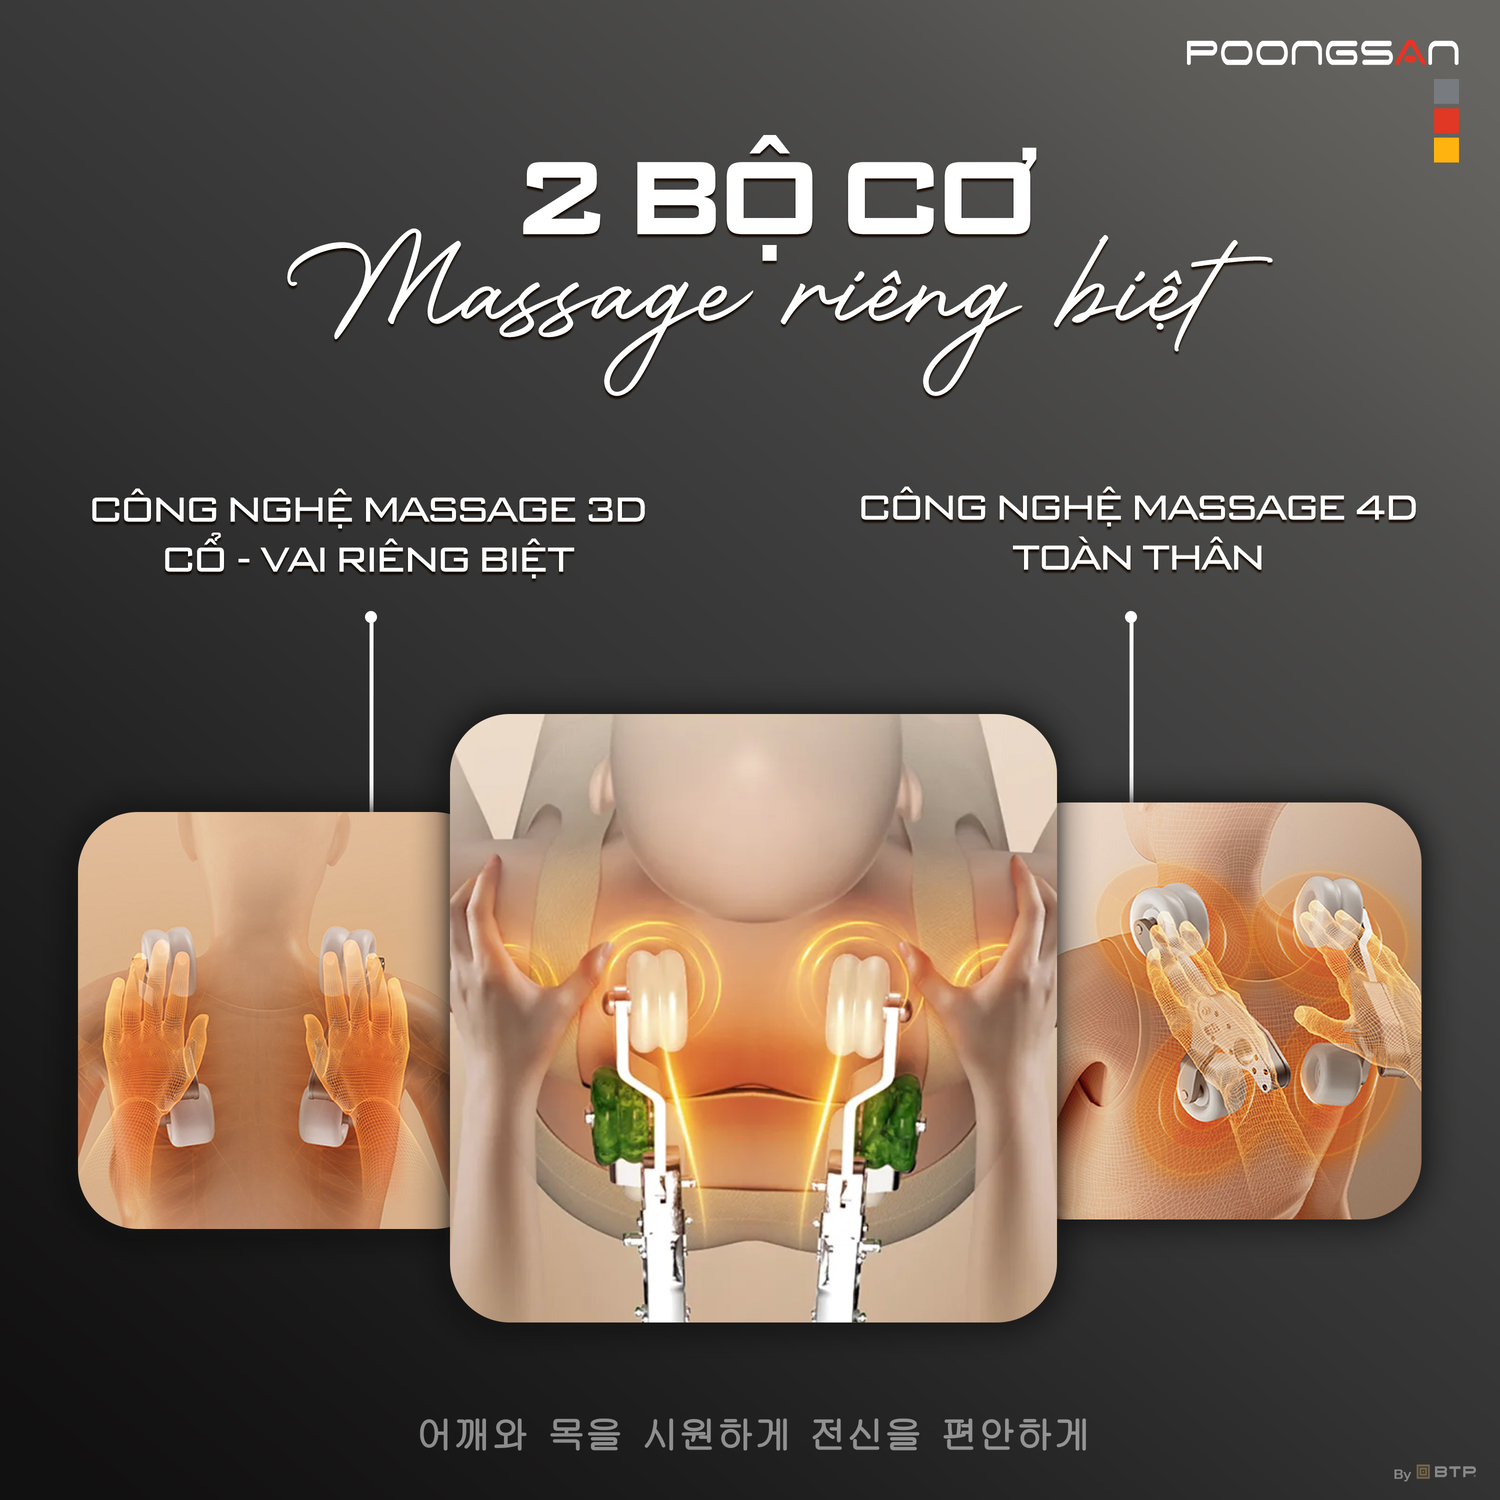 Poongsan MCP-906 sở hữu 2 bộ cơ massage riêng biệt